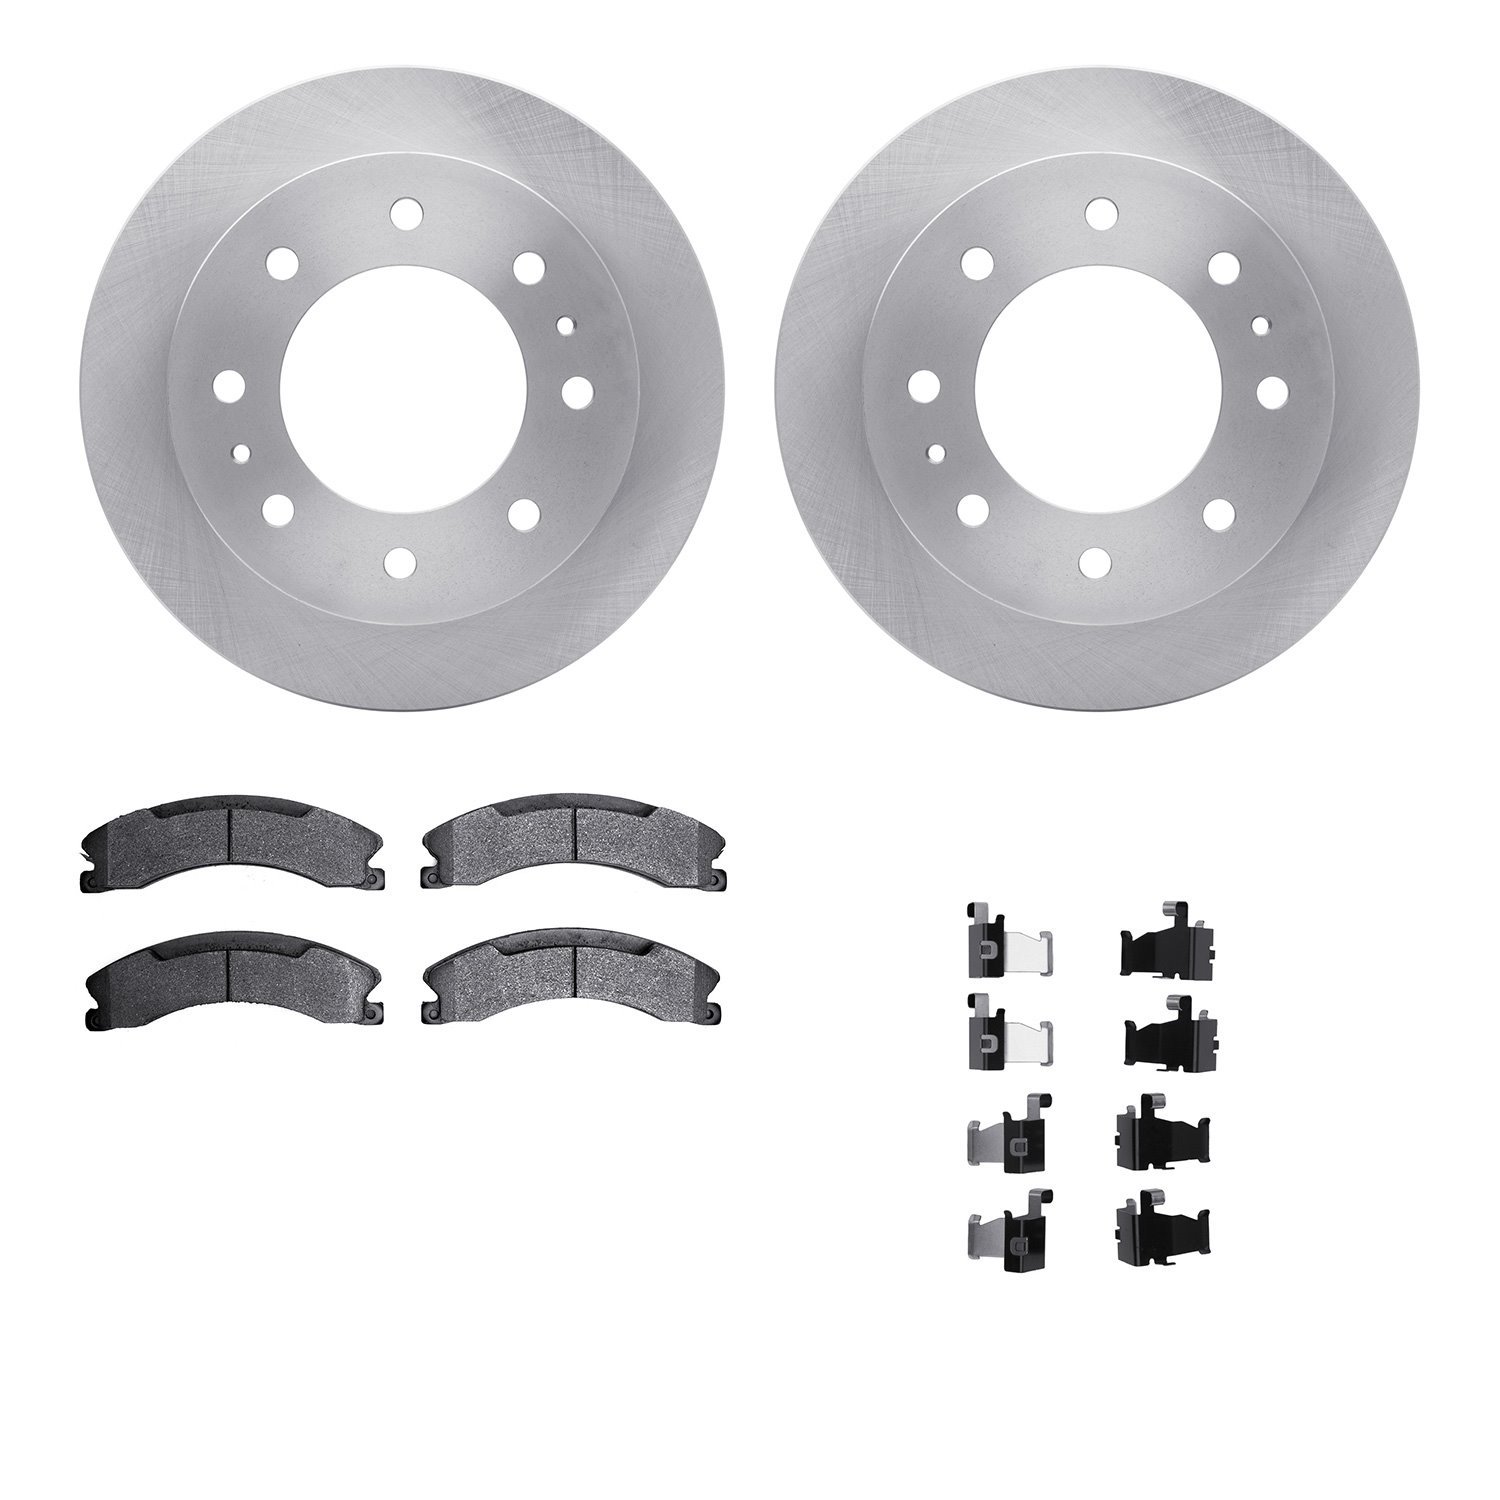 6212-48076 Brake Rotors w/Heavy-Duty Brake Pads Kit & Hardware, 2011-2019 GM, Position: Rear